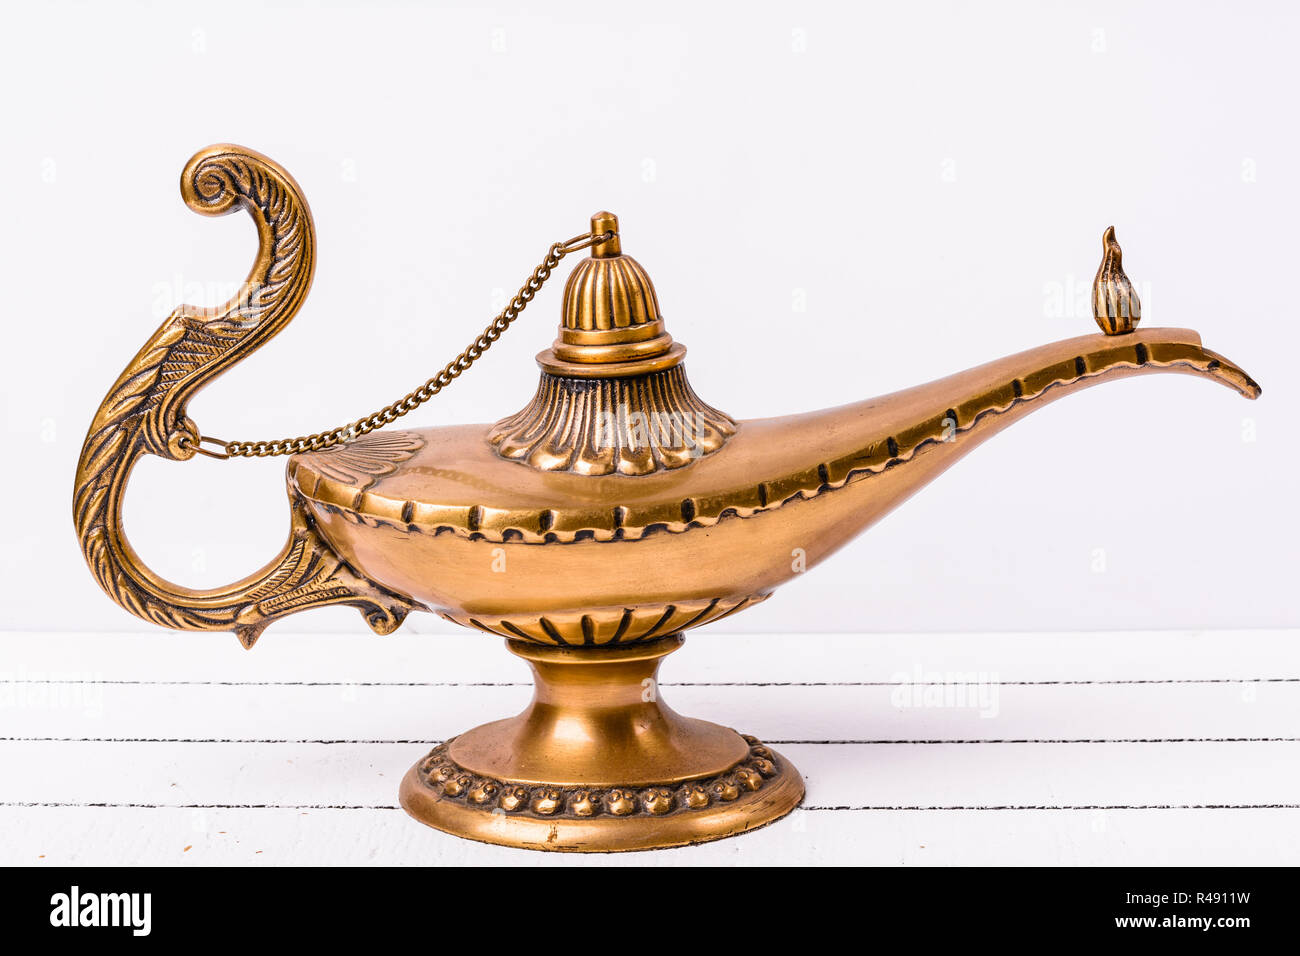 Aladin Wunderlampe auf weißem Holz Hintergrund Stockfotografie - Alamy